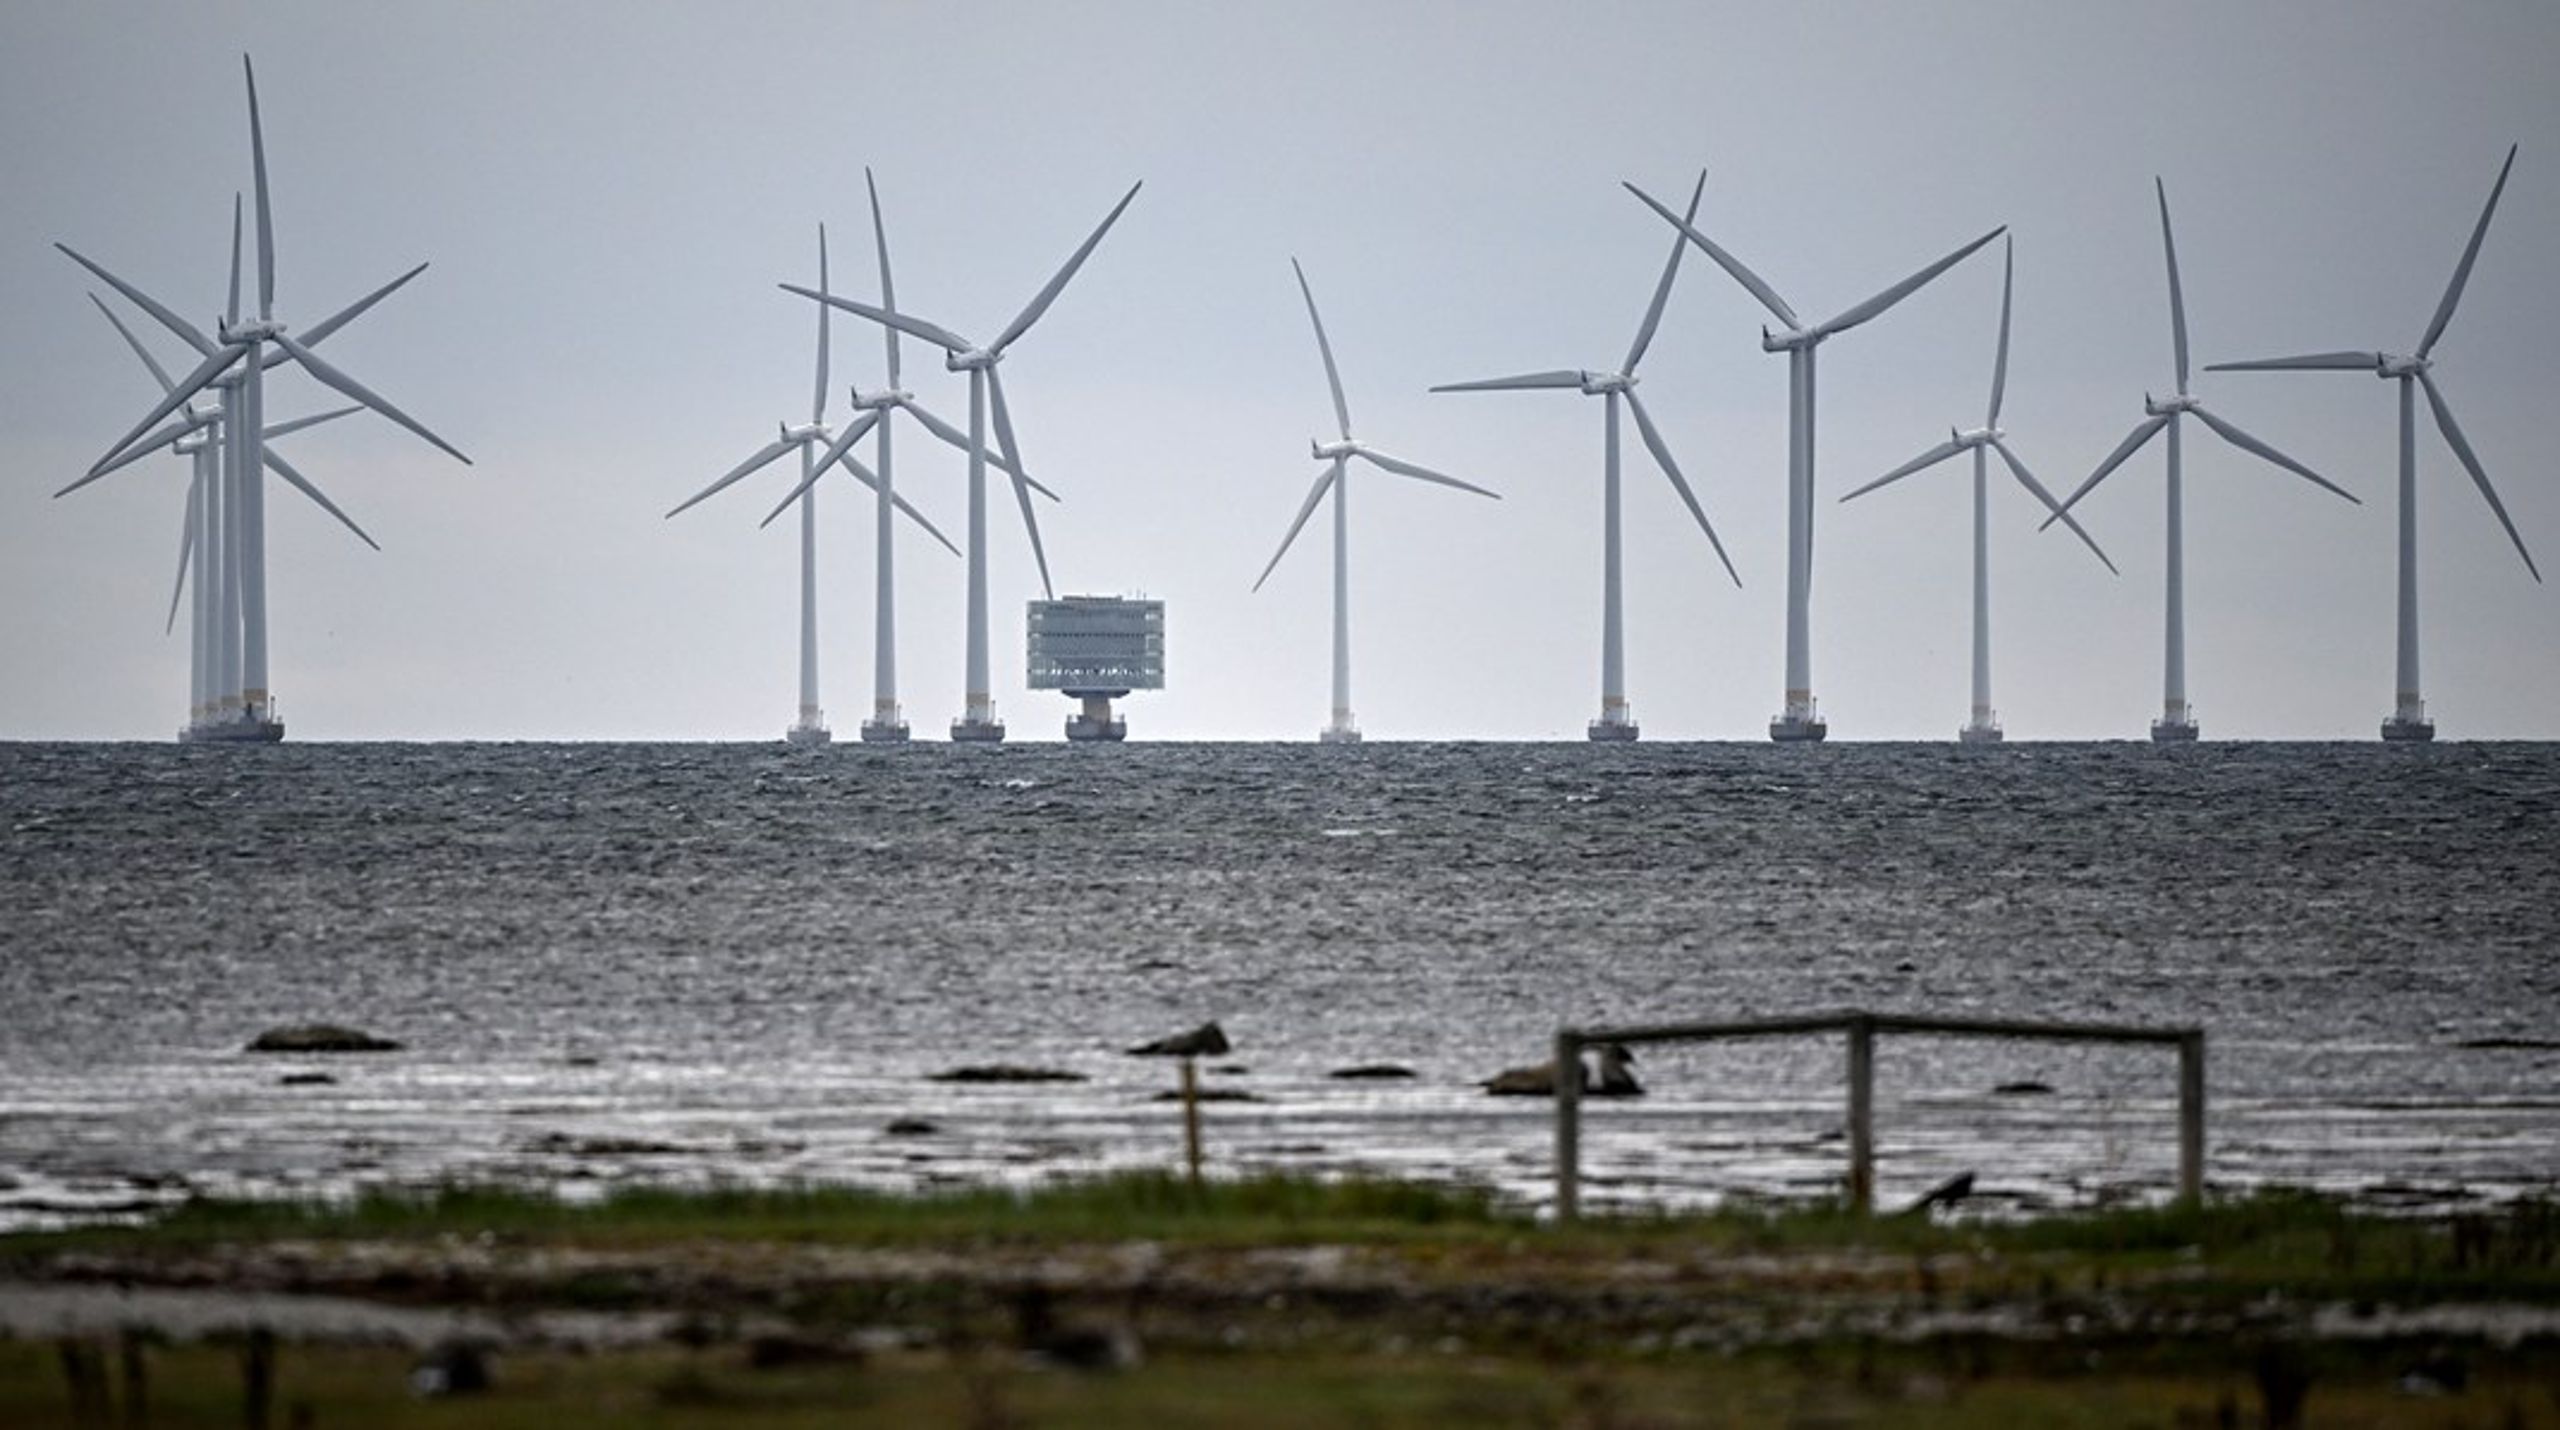 Byggandet av nya vindkraftsparker påverkar inte bara&nbsp;yrkesfisket utan även Sverige beredskapsförmåga, skriver debattören.